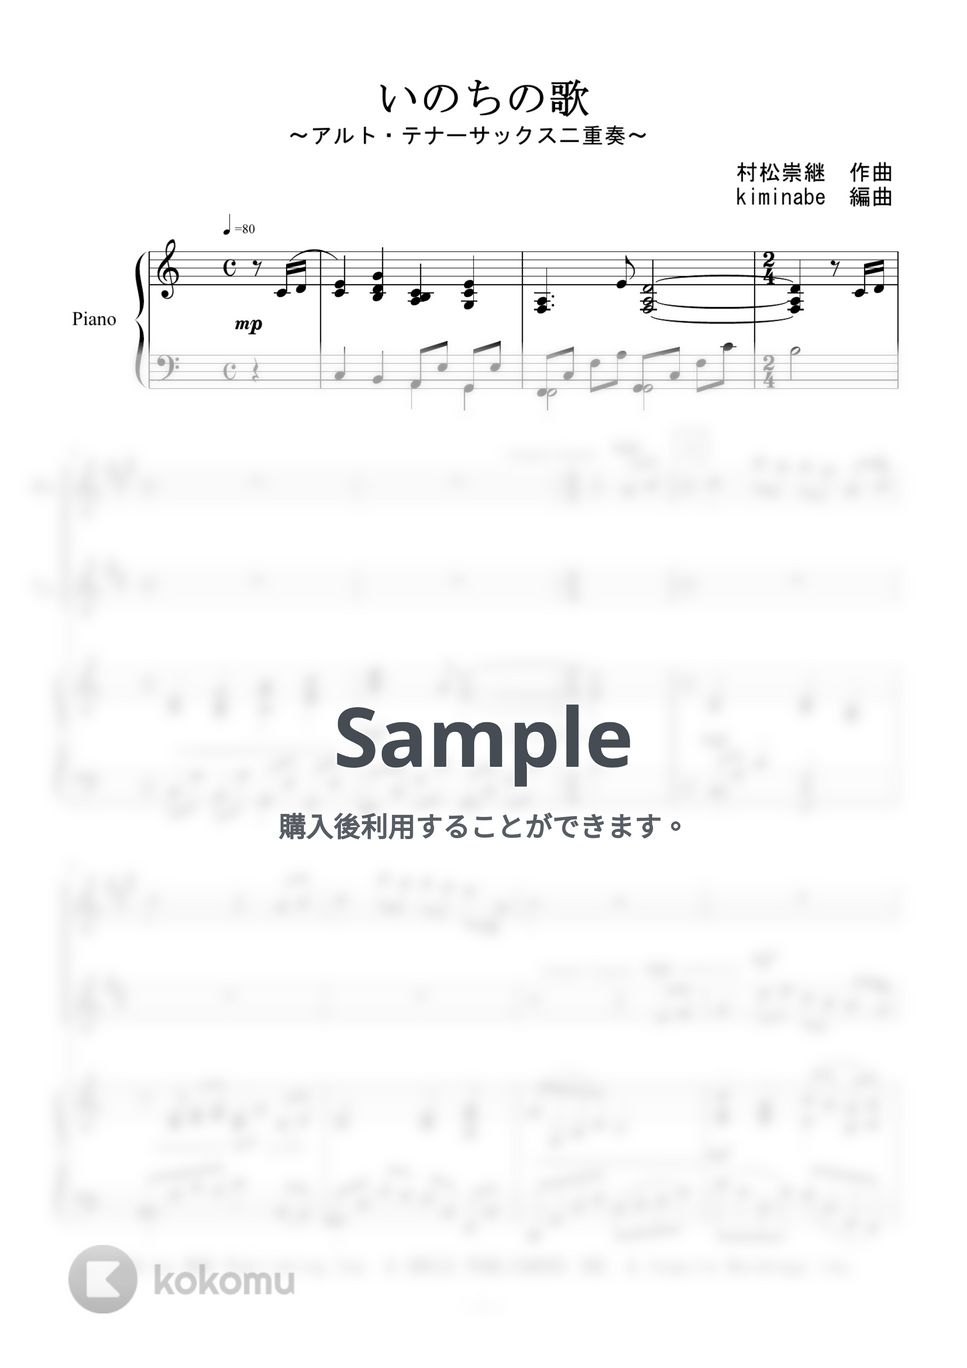 竹内まりや - いのちの歌 (アルト・テナーサックス二重奏) by kiminabe